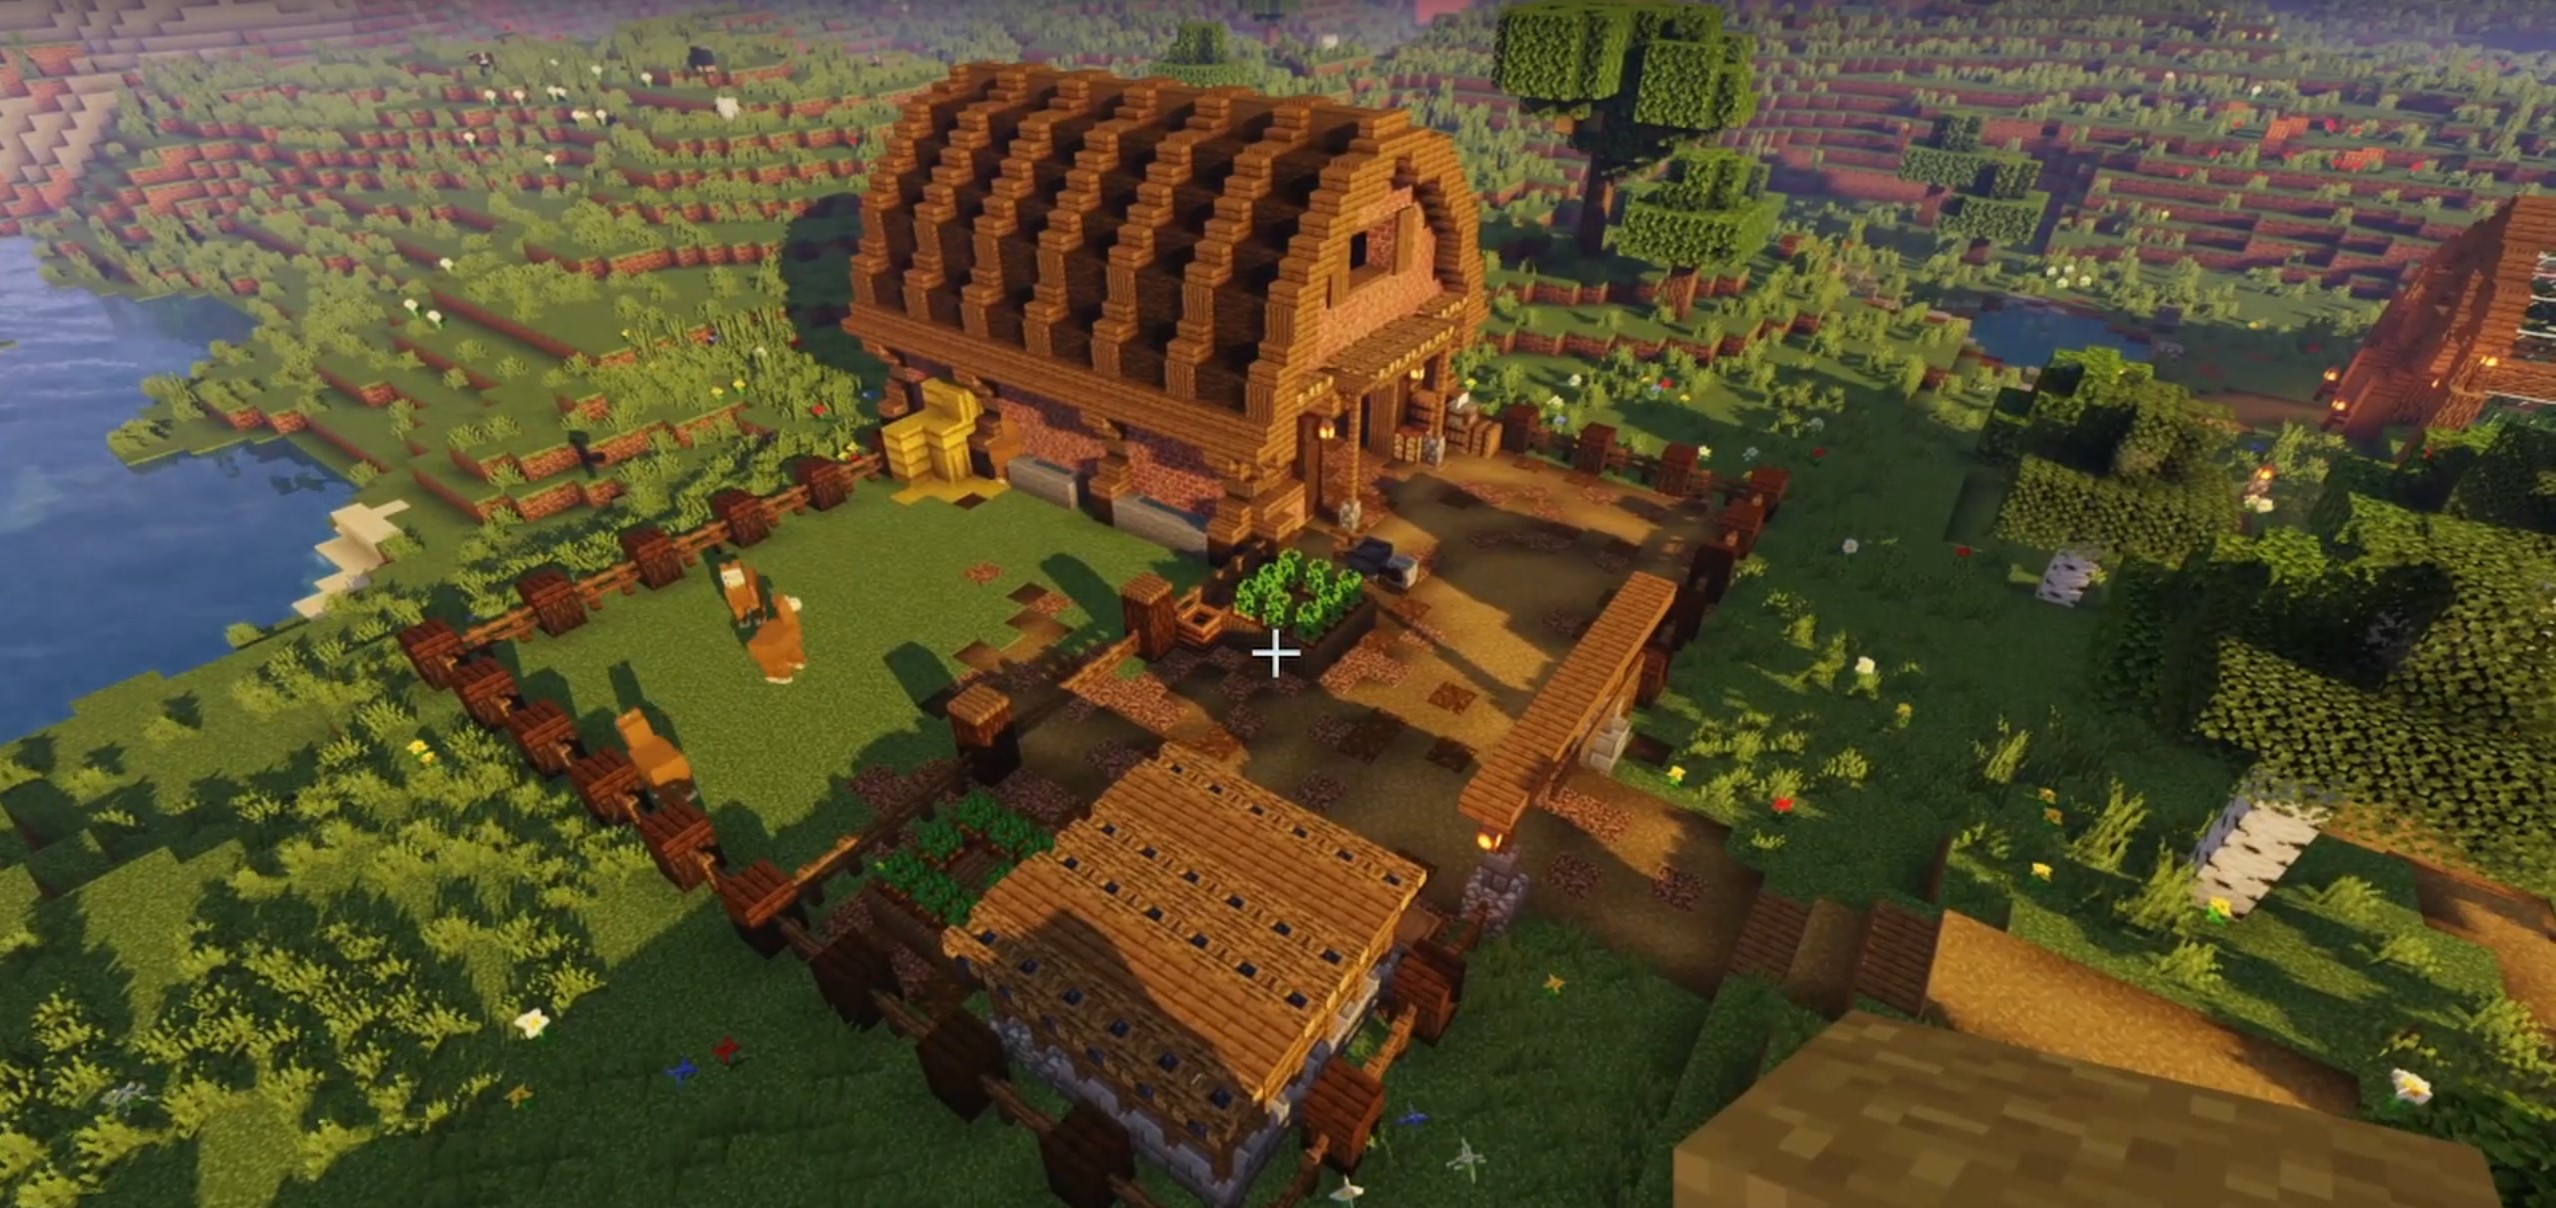 Minecraft Aesthetic Animal Barn idea